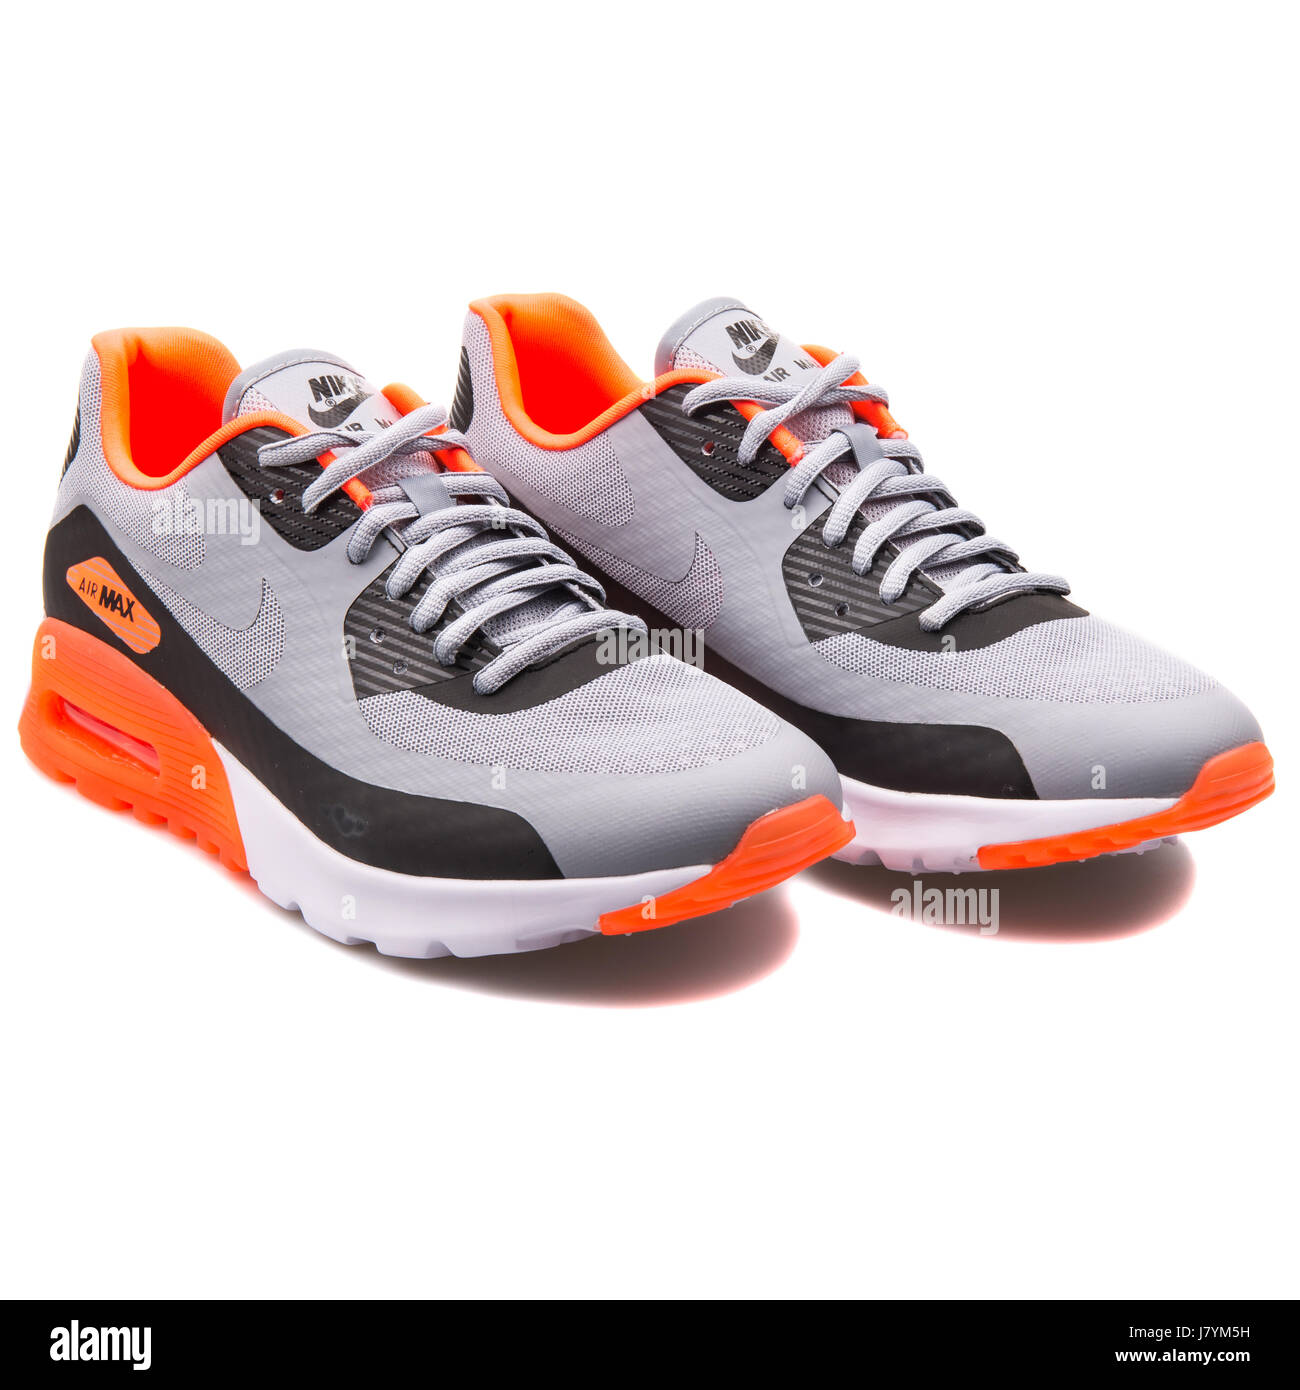 W Nike Air Max 90 femmes BR Ultra gris et orange - Chaussures de course  725061-001 Photo Stock - Alamy